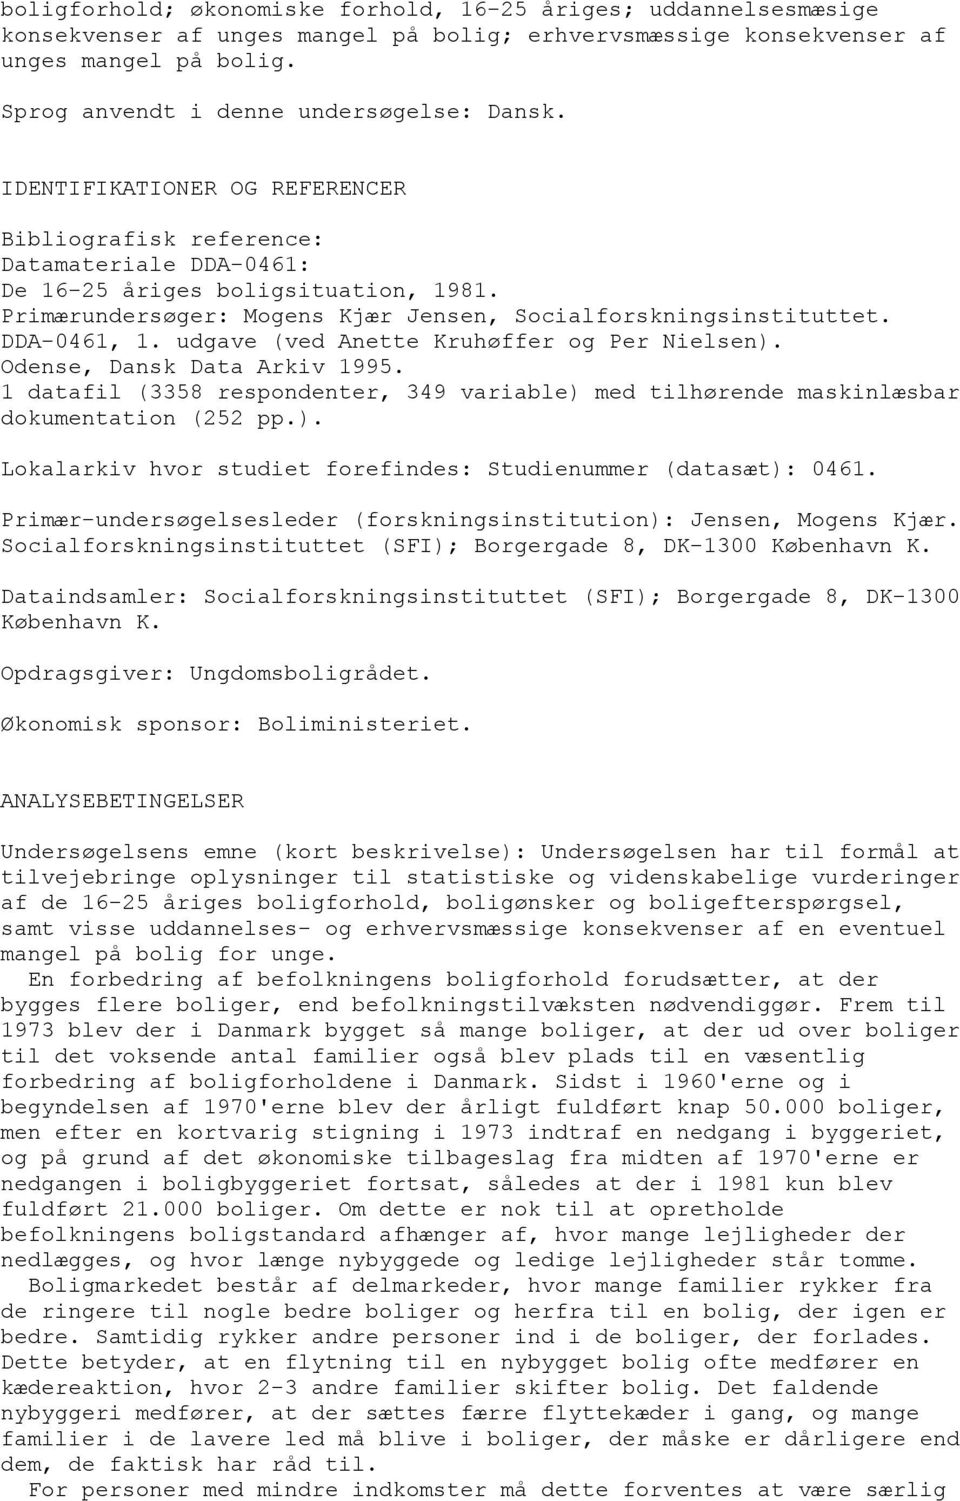 Primærundersøger: Mogens Kjær Jensen, Socialforskningsinstituttet. DDA-0461, 1. udgave (ved Anette Kruhøffer og Per Nielsen). Odense, Dansk Data Arkiv 1995.